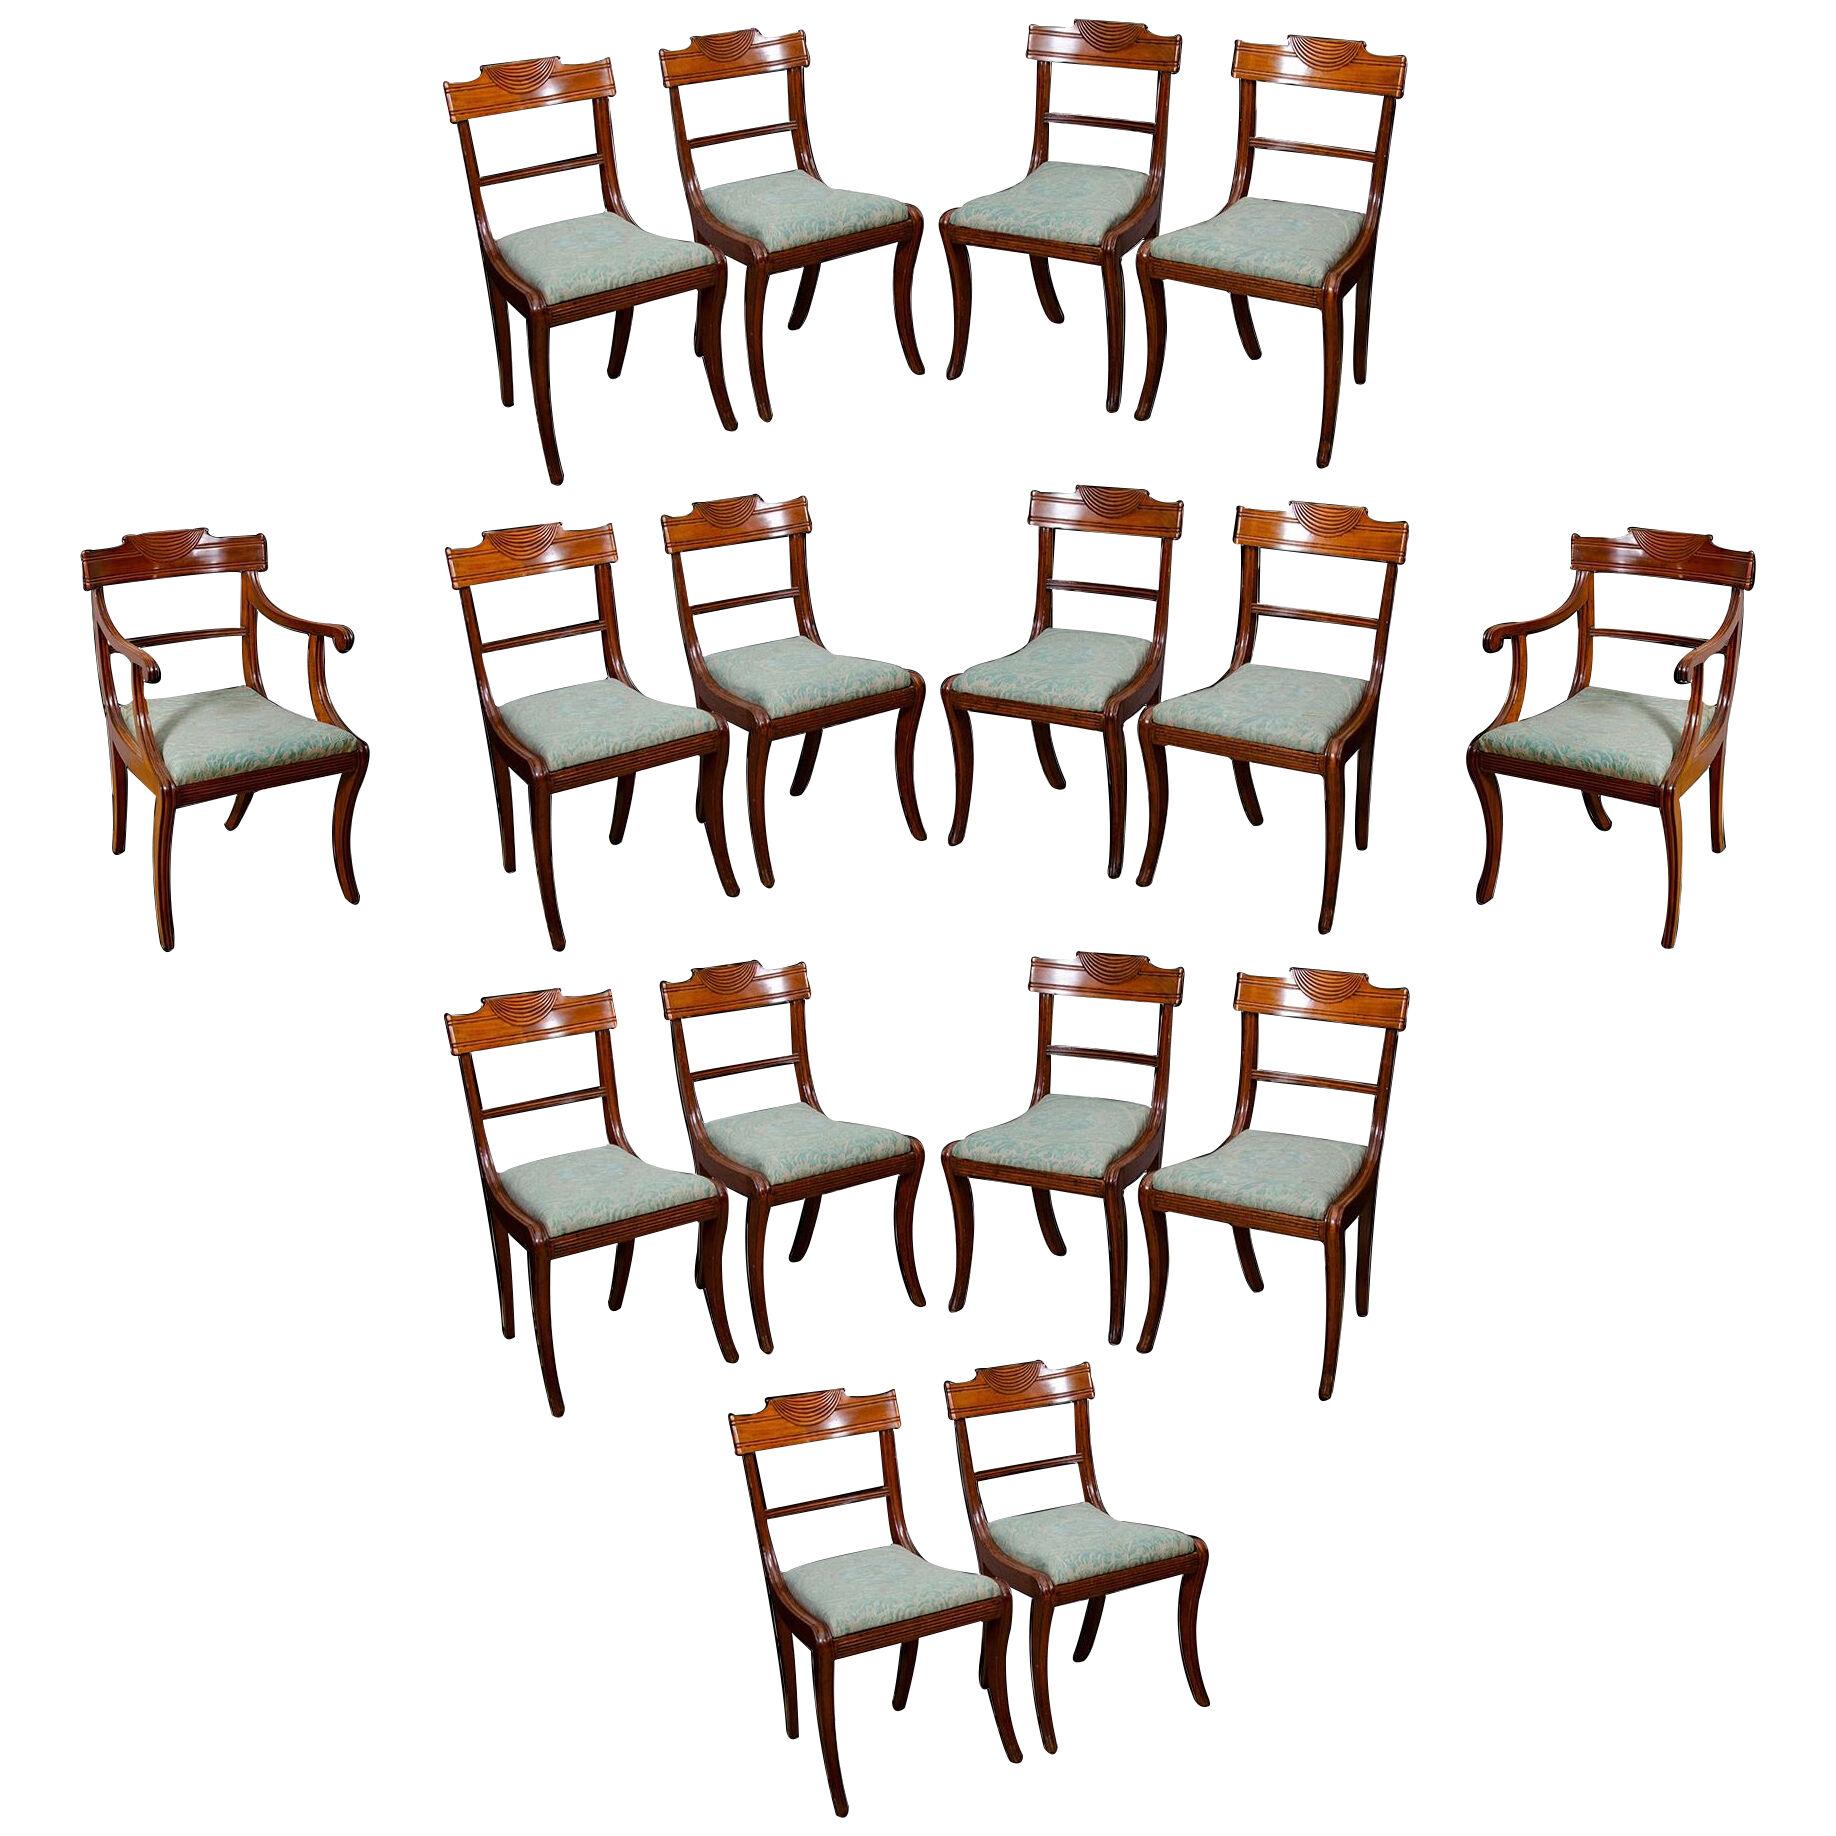 Regency Mahogany Dining Chairs - Set of 16